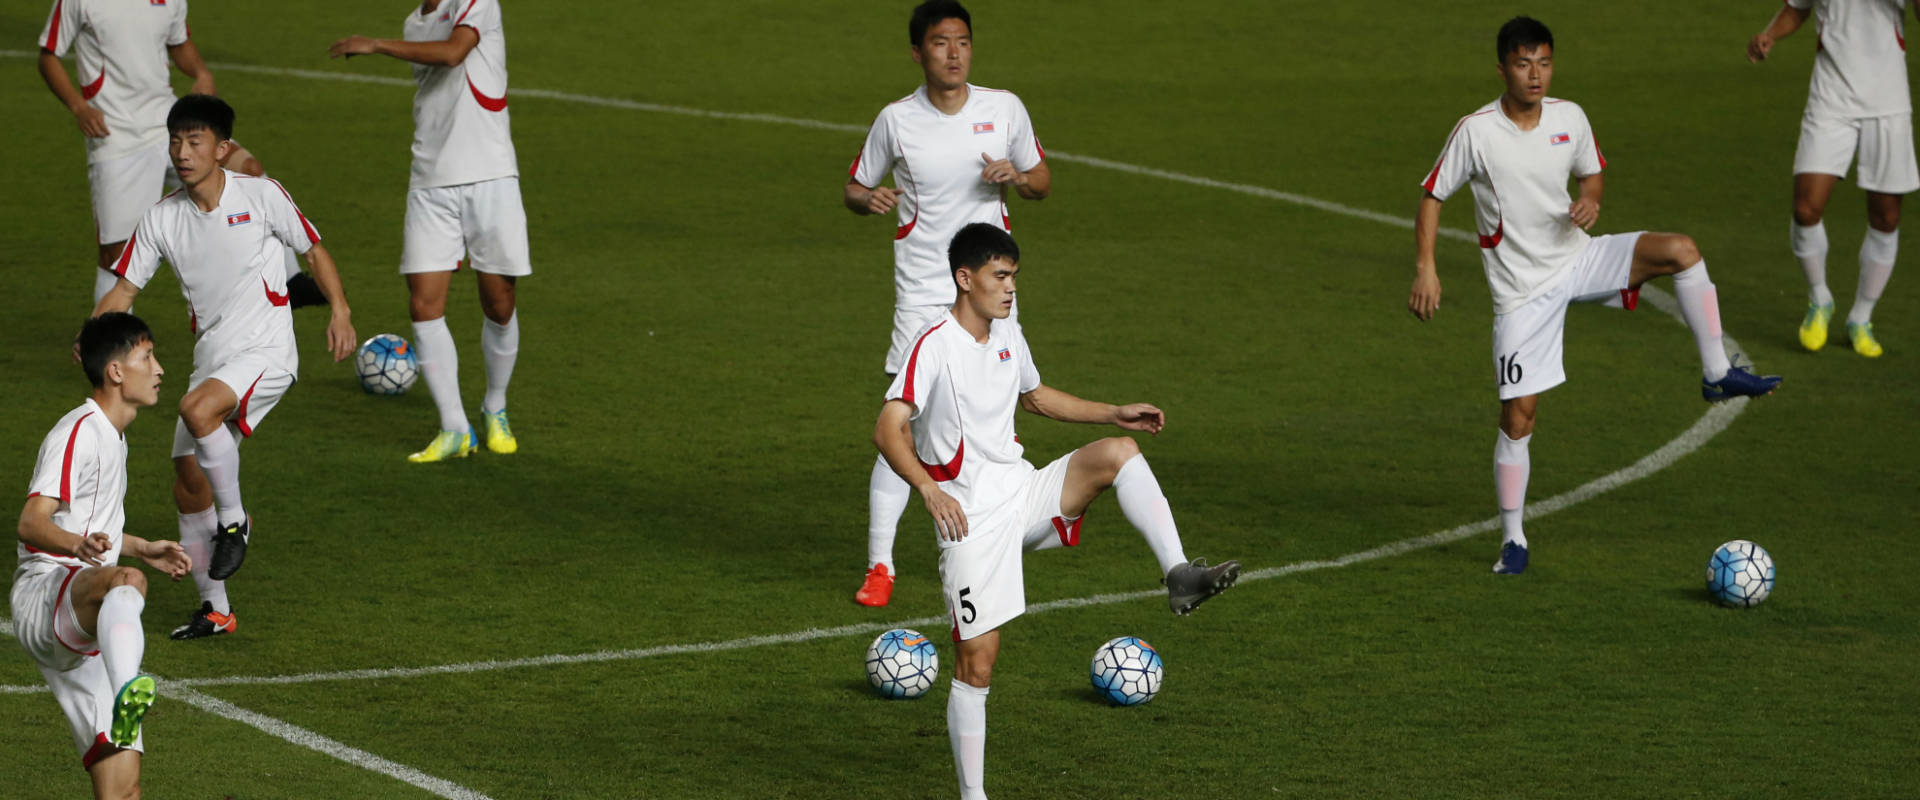 שחקני קוריאה הצפונית בחימום לפני משחק